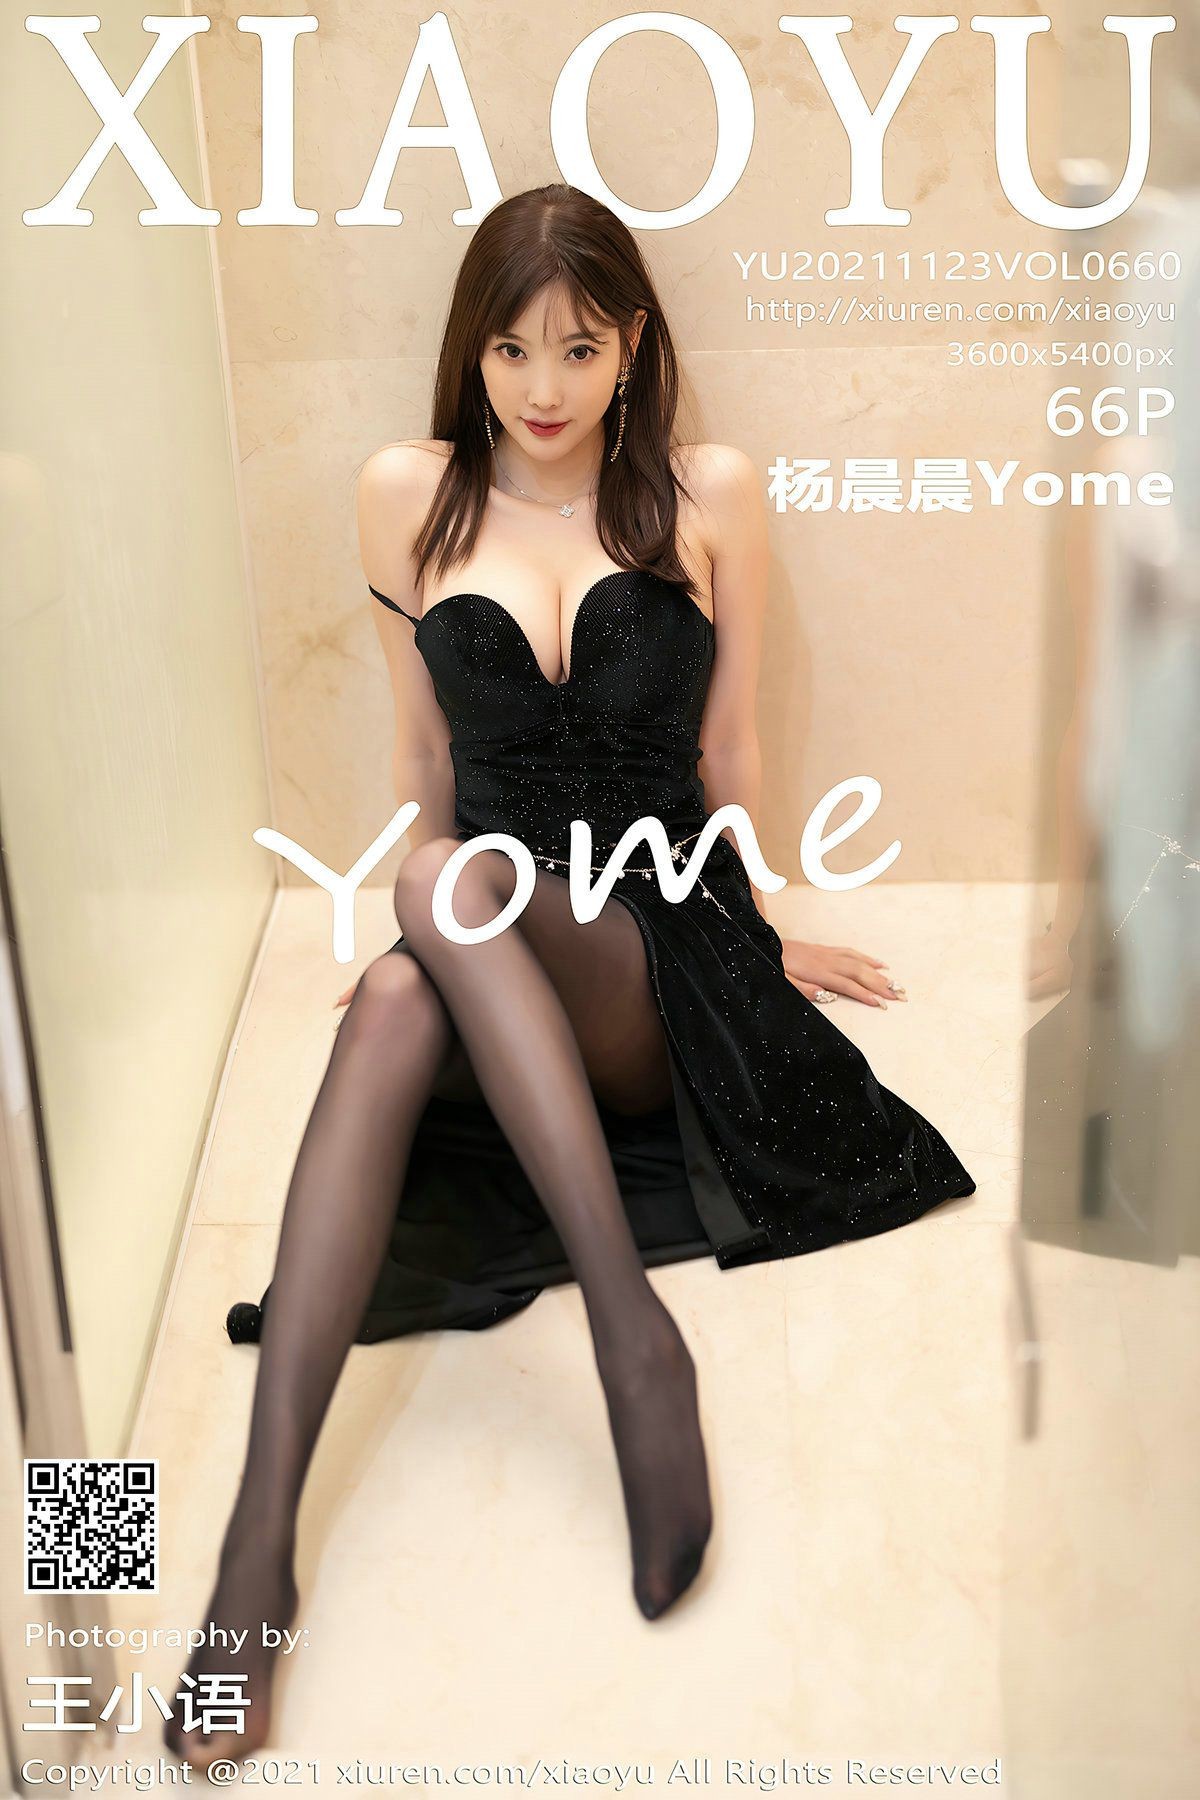 XIAOYU语画界性感模特写真第Vol.660期杨晨晨Yome (68)